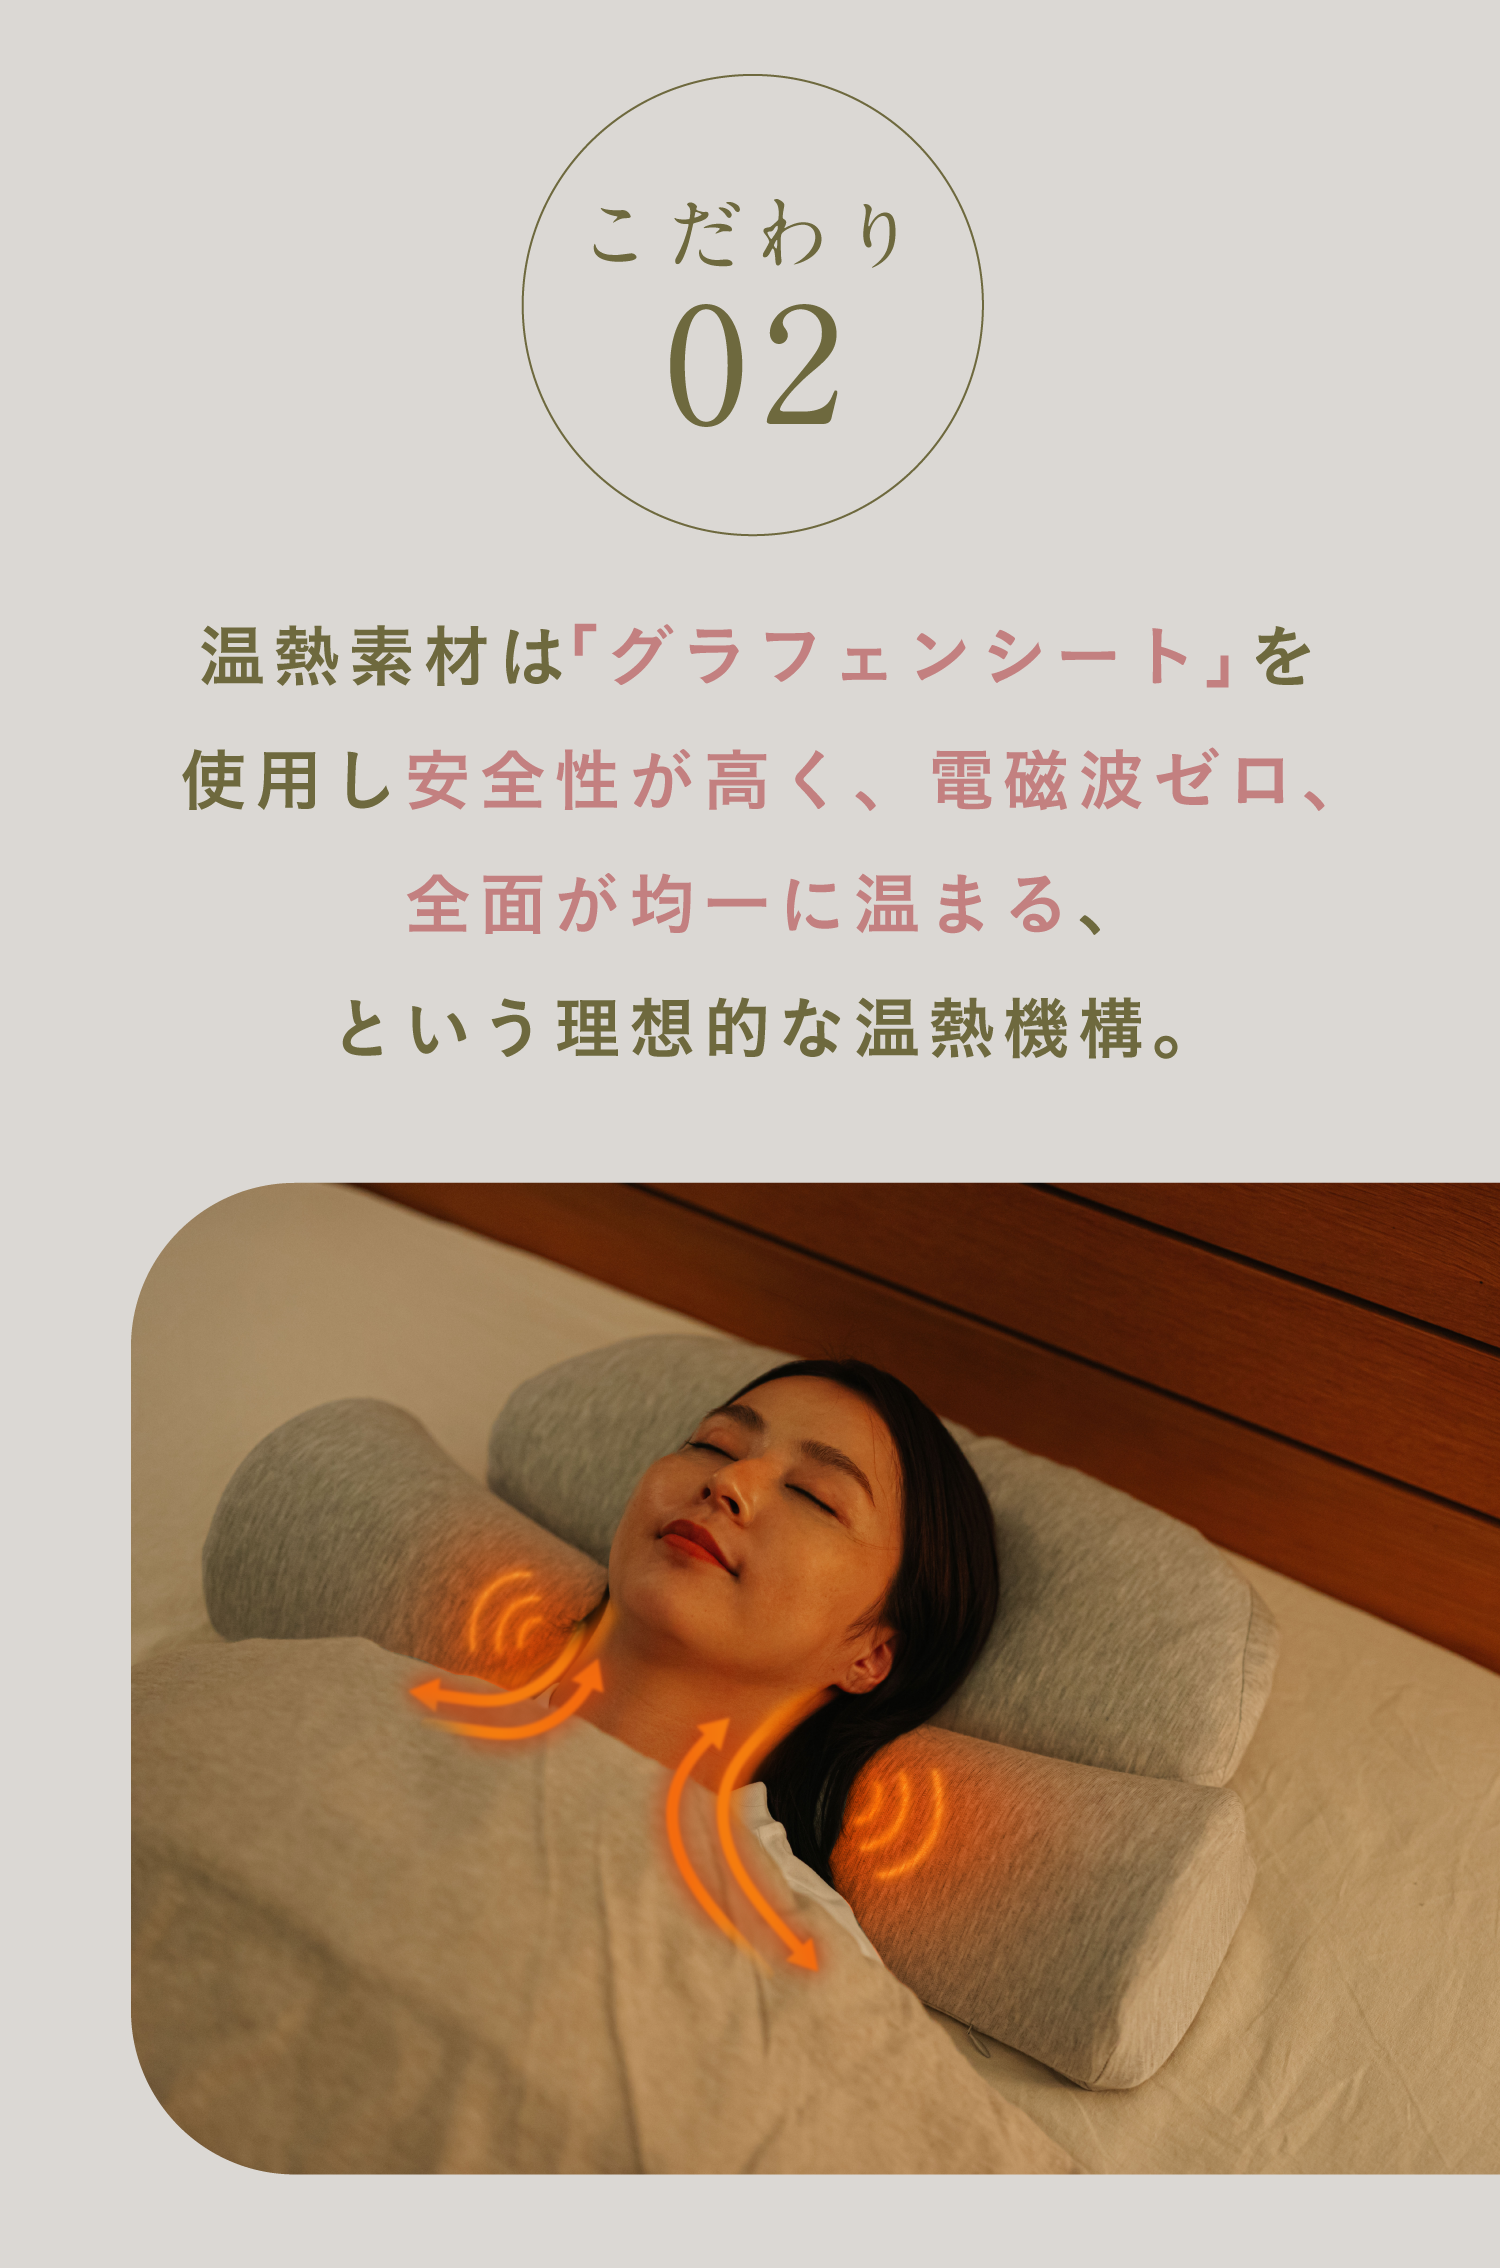 首と肩がホッとする枕 | 首を40度で15分間温め、心地よい睡眠ホットまくらどうしても合わず出品です